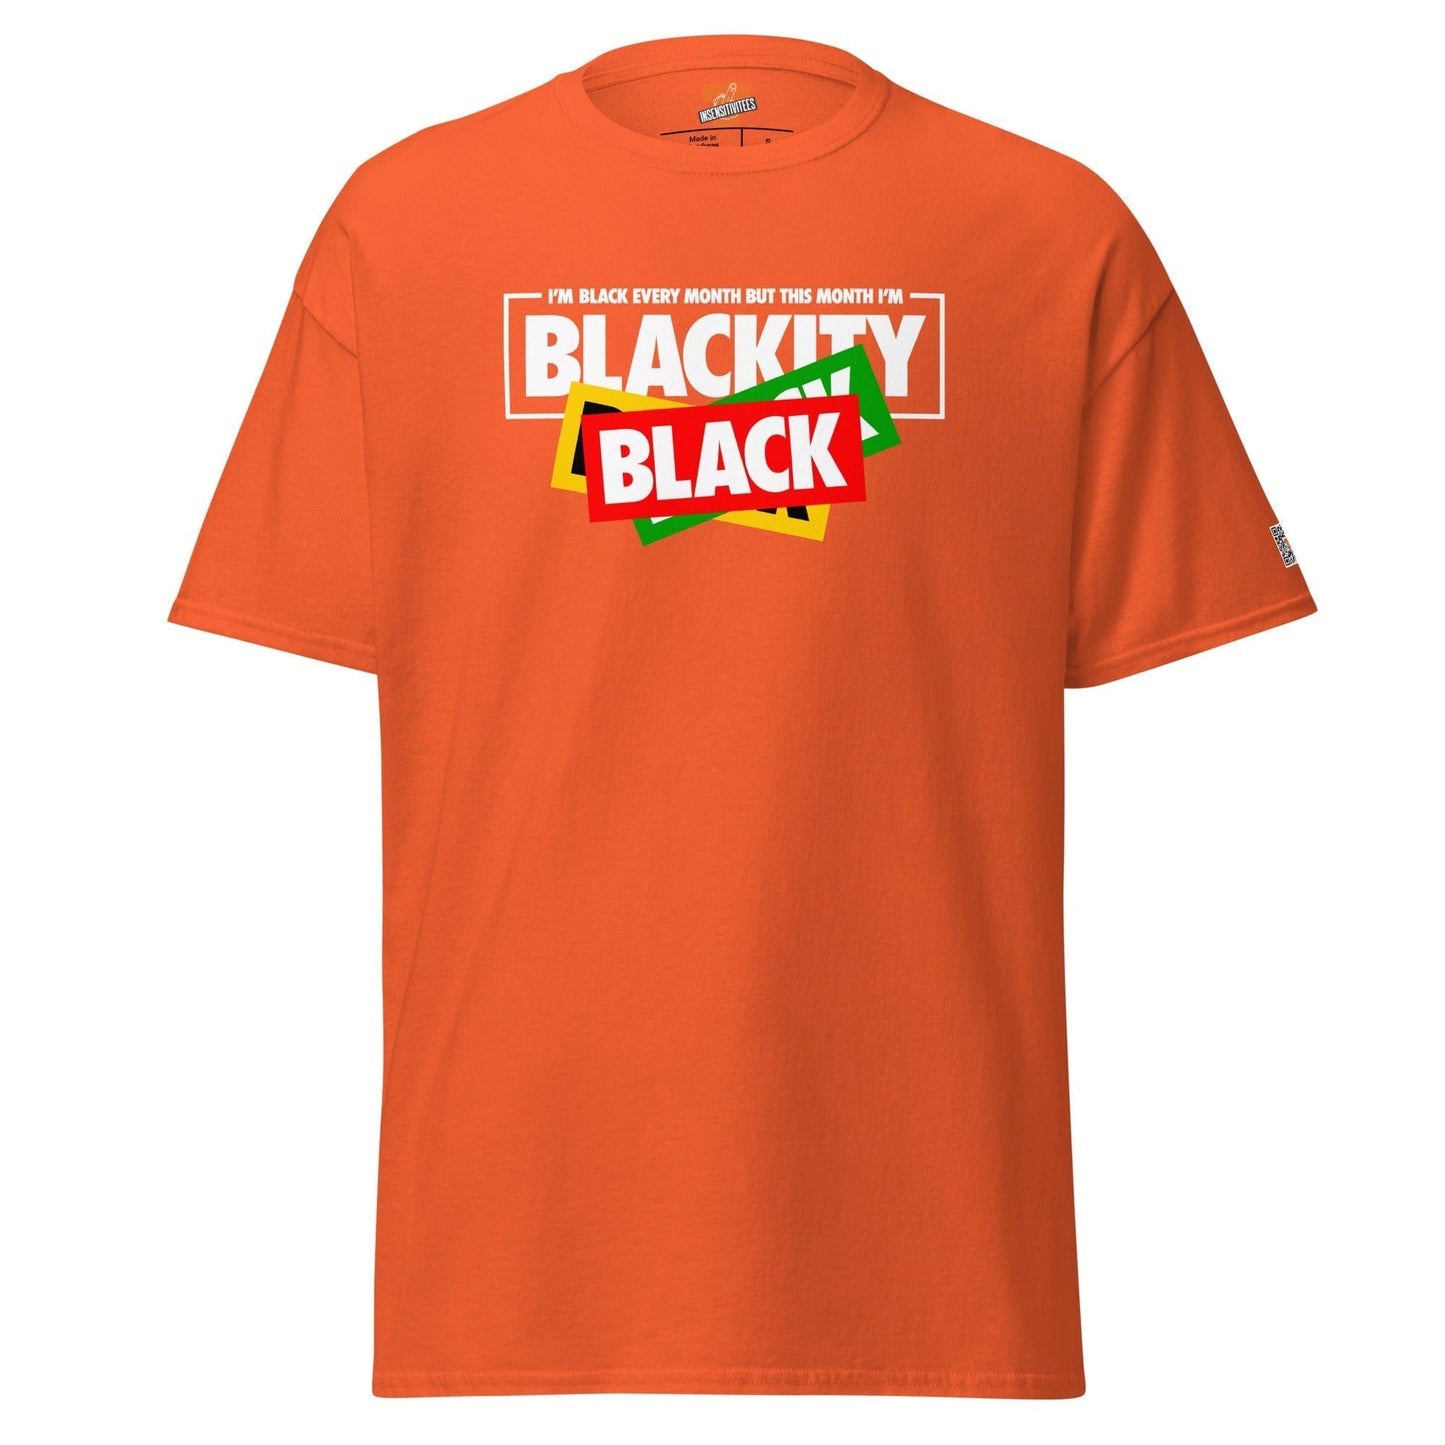 InsensitiviTees™️ Blackity Black Unisex Tee 2